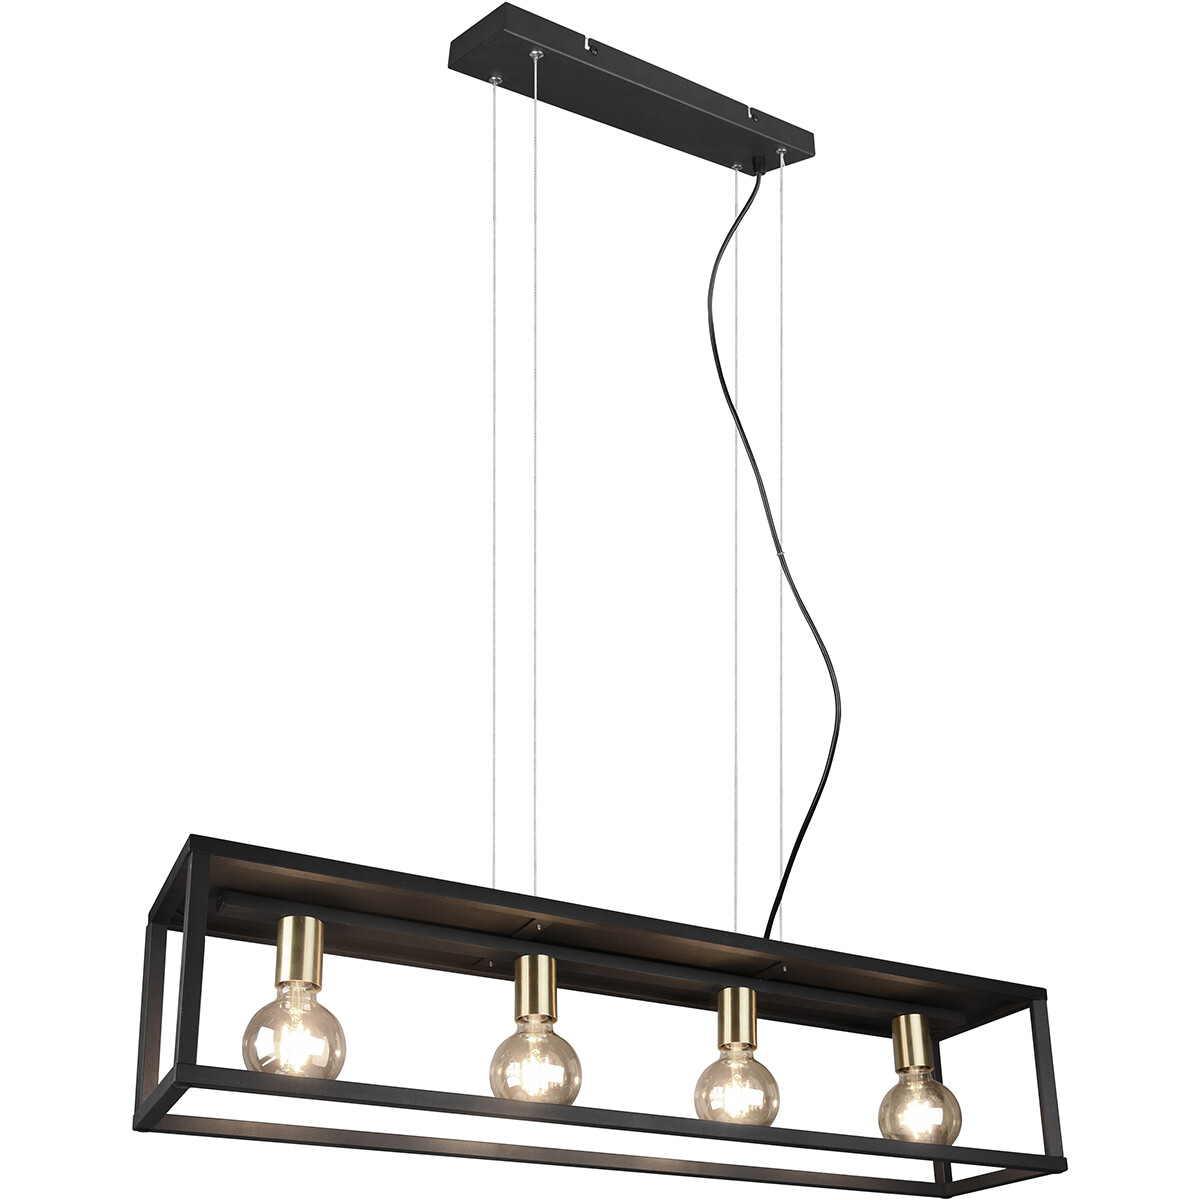 LED Hanglamp - Hangverlichting - Trion Kandin - E27 Fitting - 4-lichts - Rechthoek - Mat Zwart - Aluminium product afbeelding